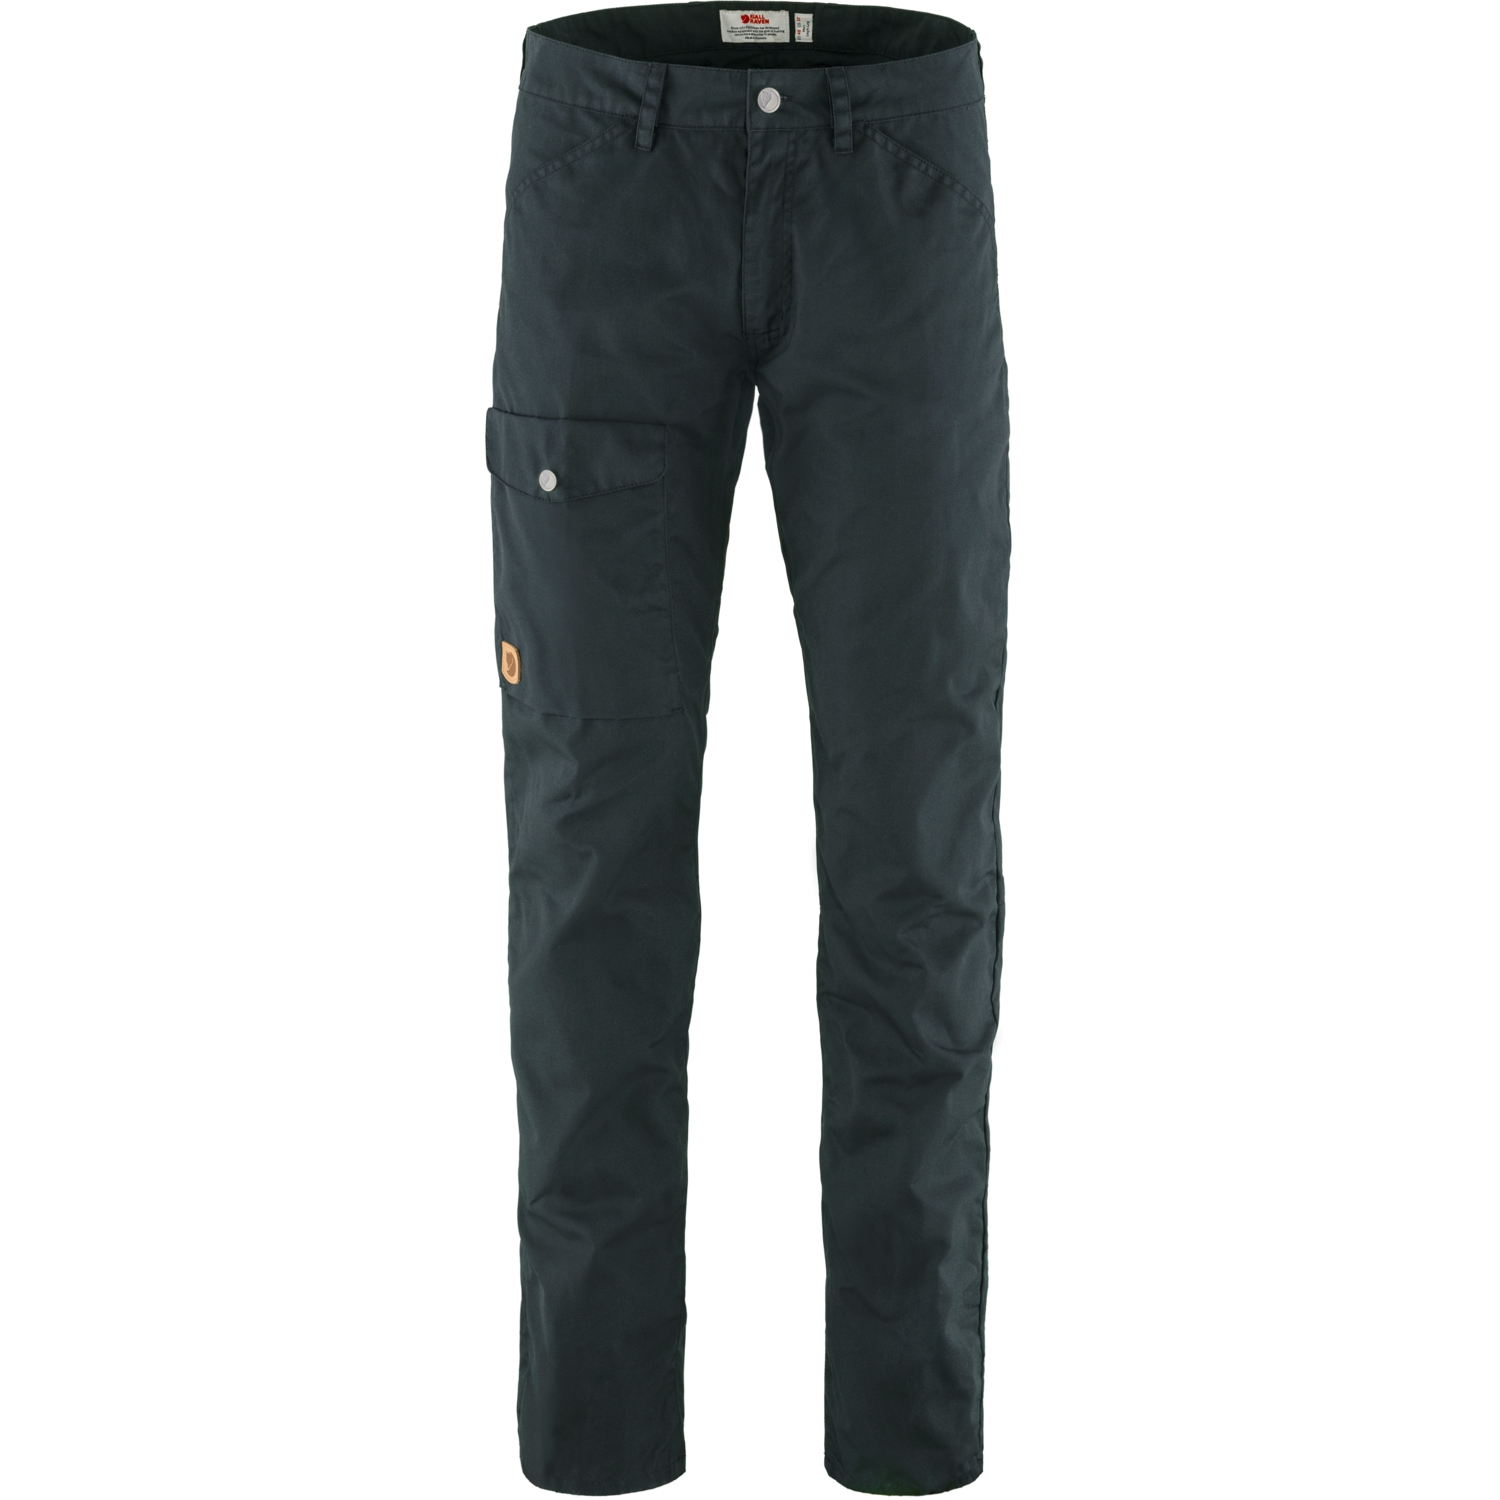 Produktbild von Fjällräven Greenland Jeans - Lang - dark navy